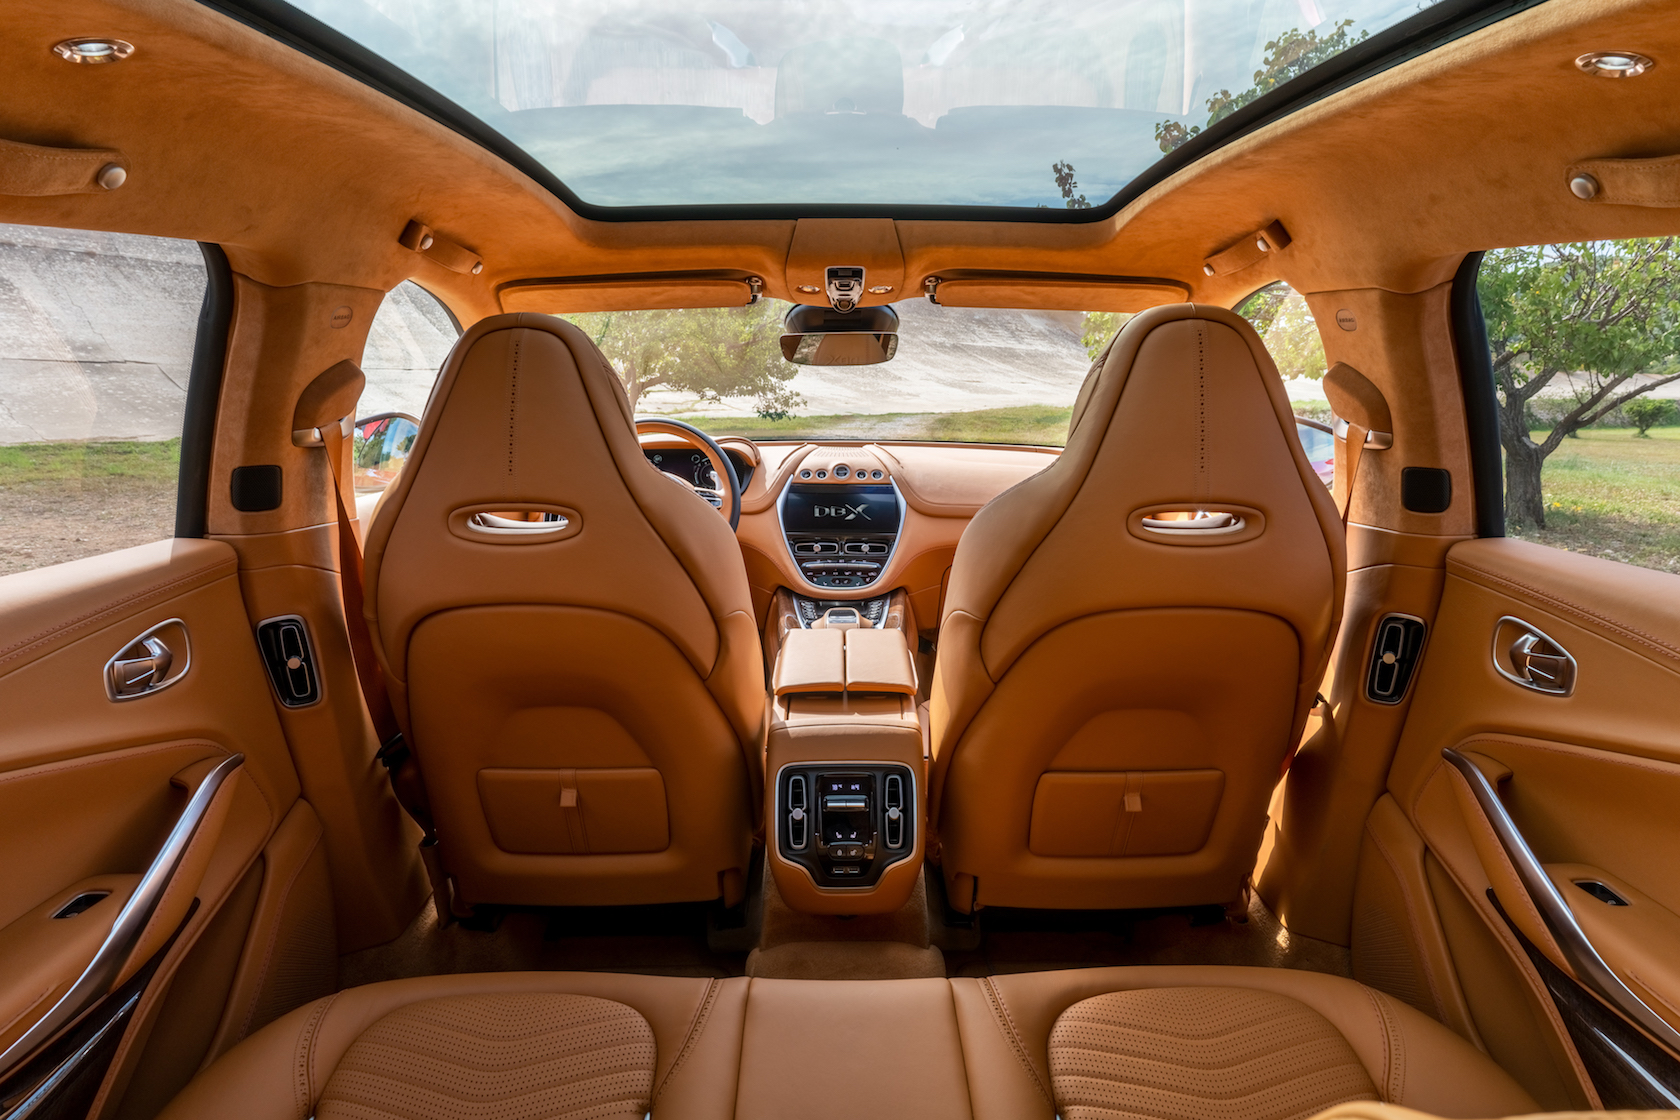 Aston Martin Dbx Price Revealed As Luxury Suv S Interior